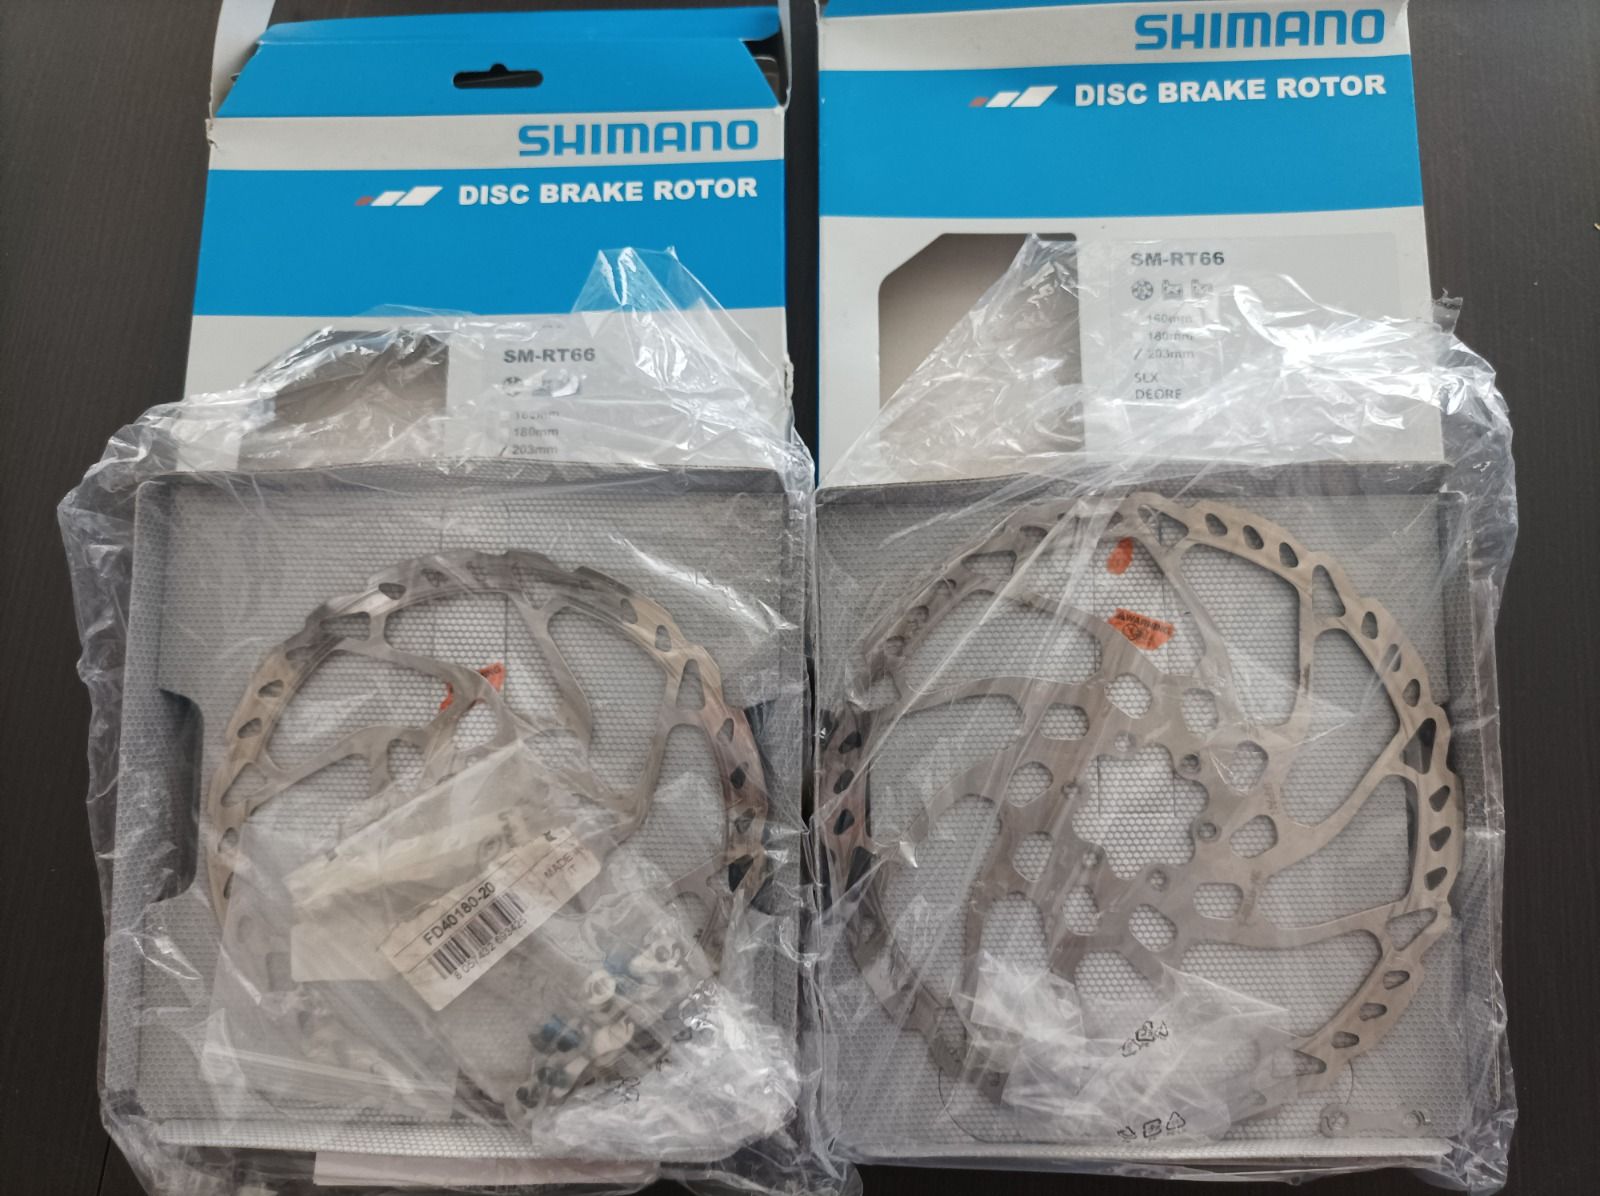 Роторы shimano rt66 с коробками, минимальный пробег 203/180.Полный комплект